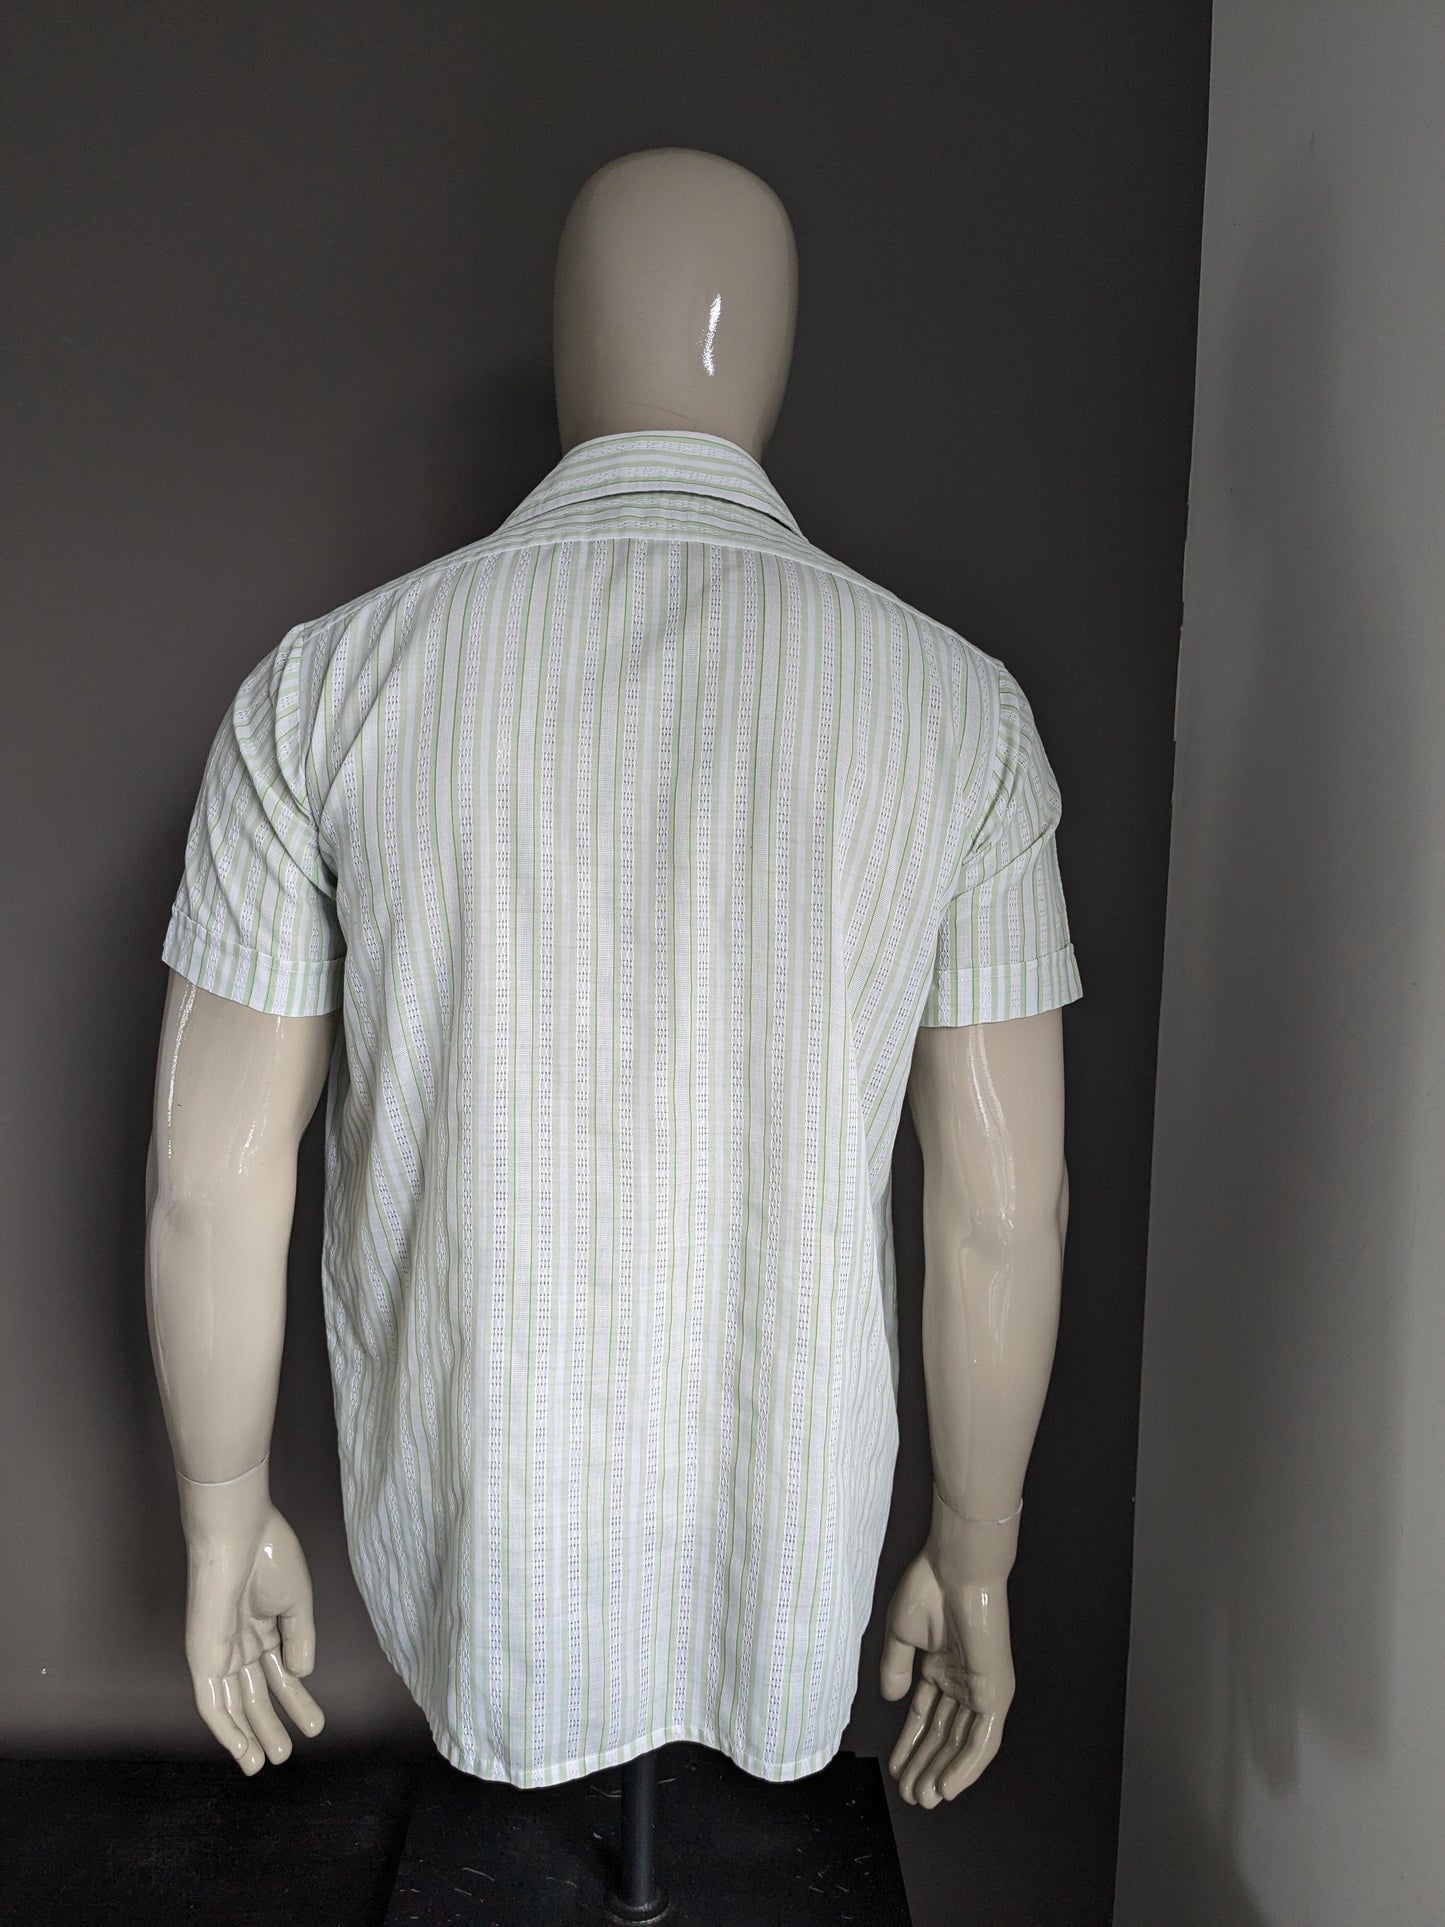 Shirt di amicizia vintage a manica corta con colletto appuntito. Motivo a strisce bianche verdi. Taglia L.